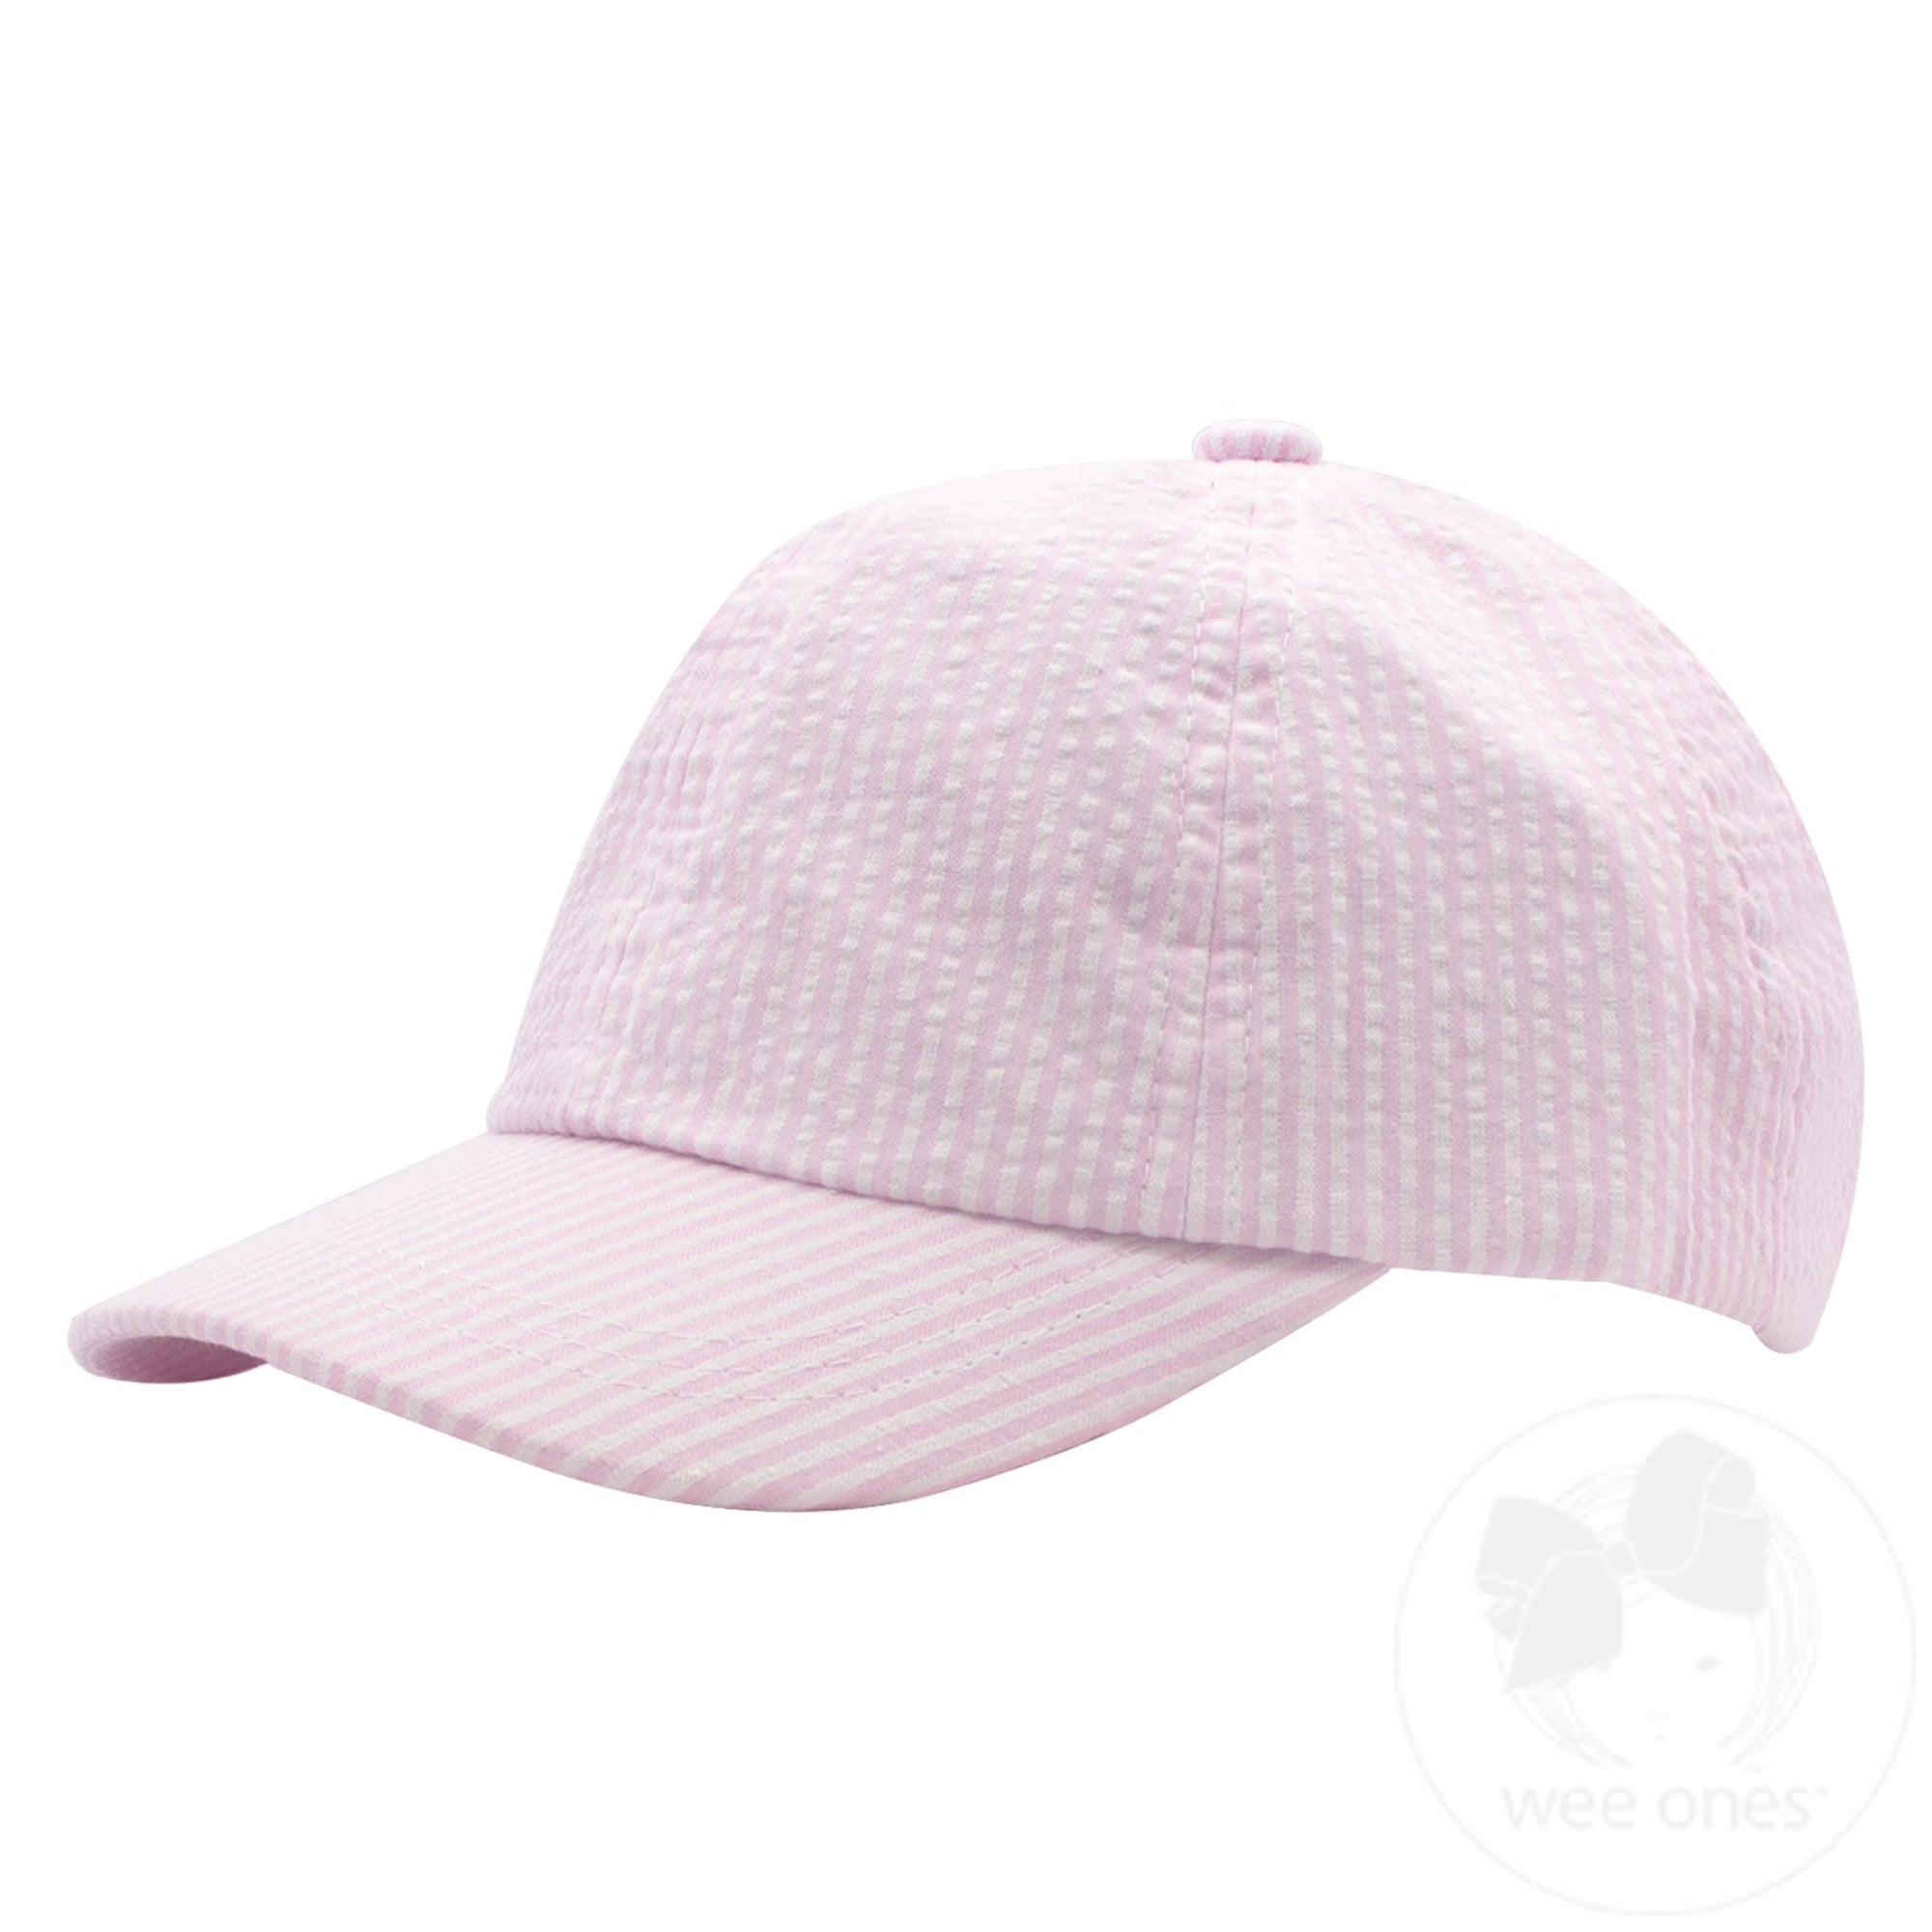 Add-a-Bow Seersucker Ball Cap | Light Pink